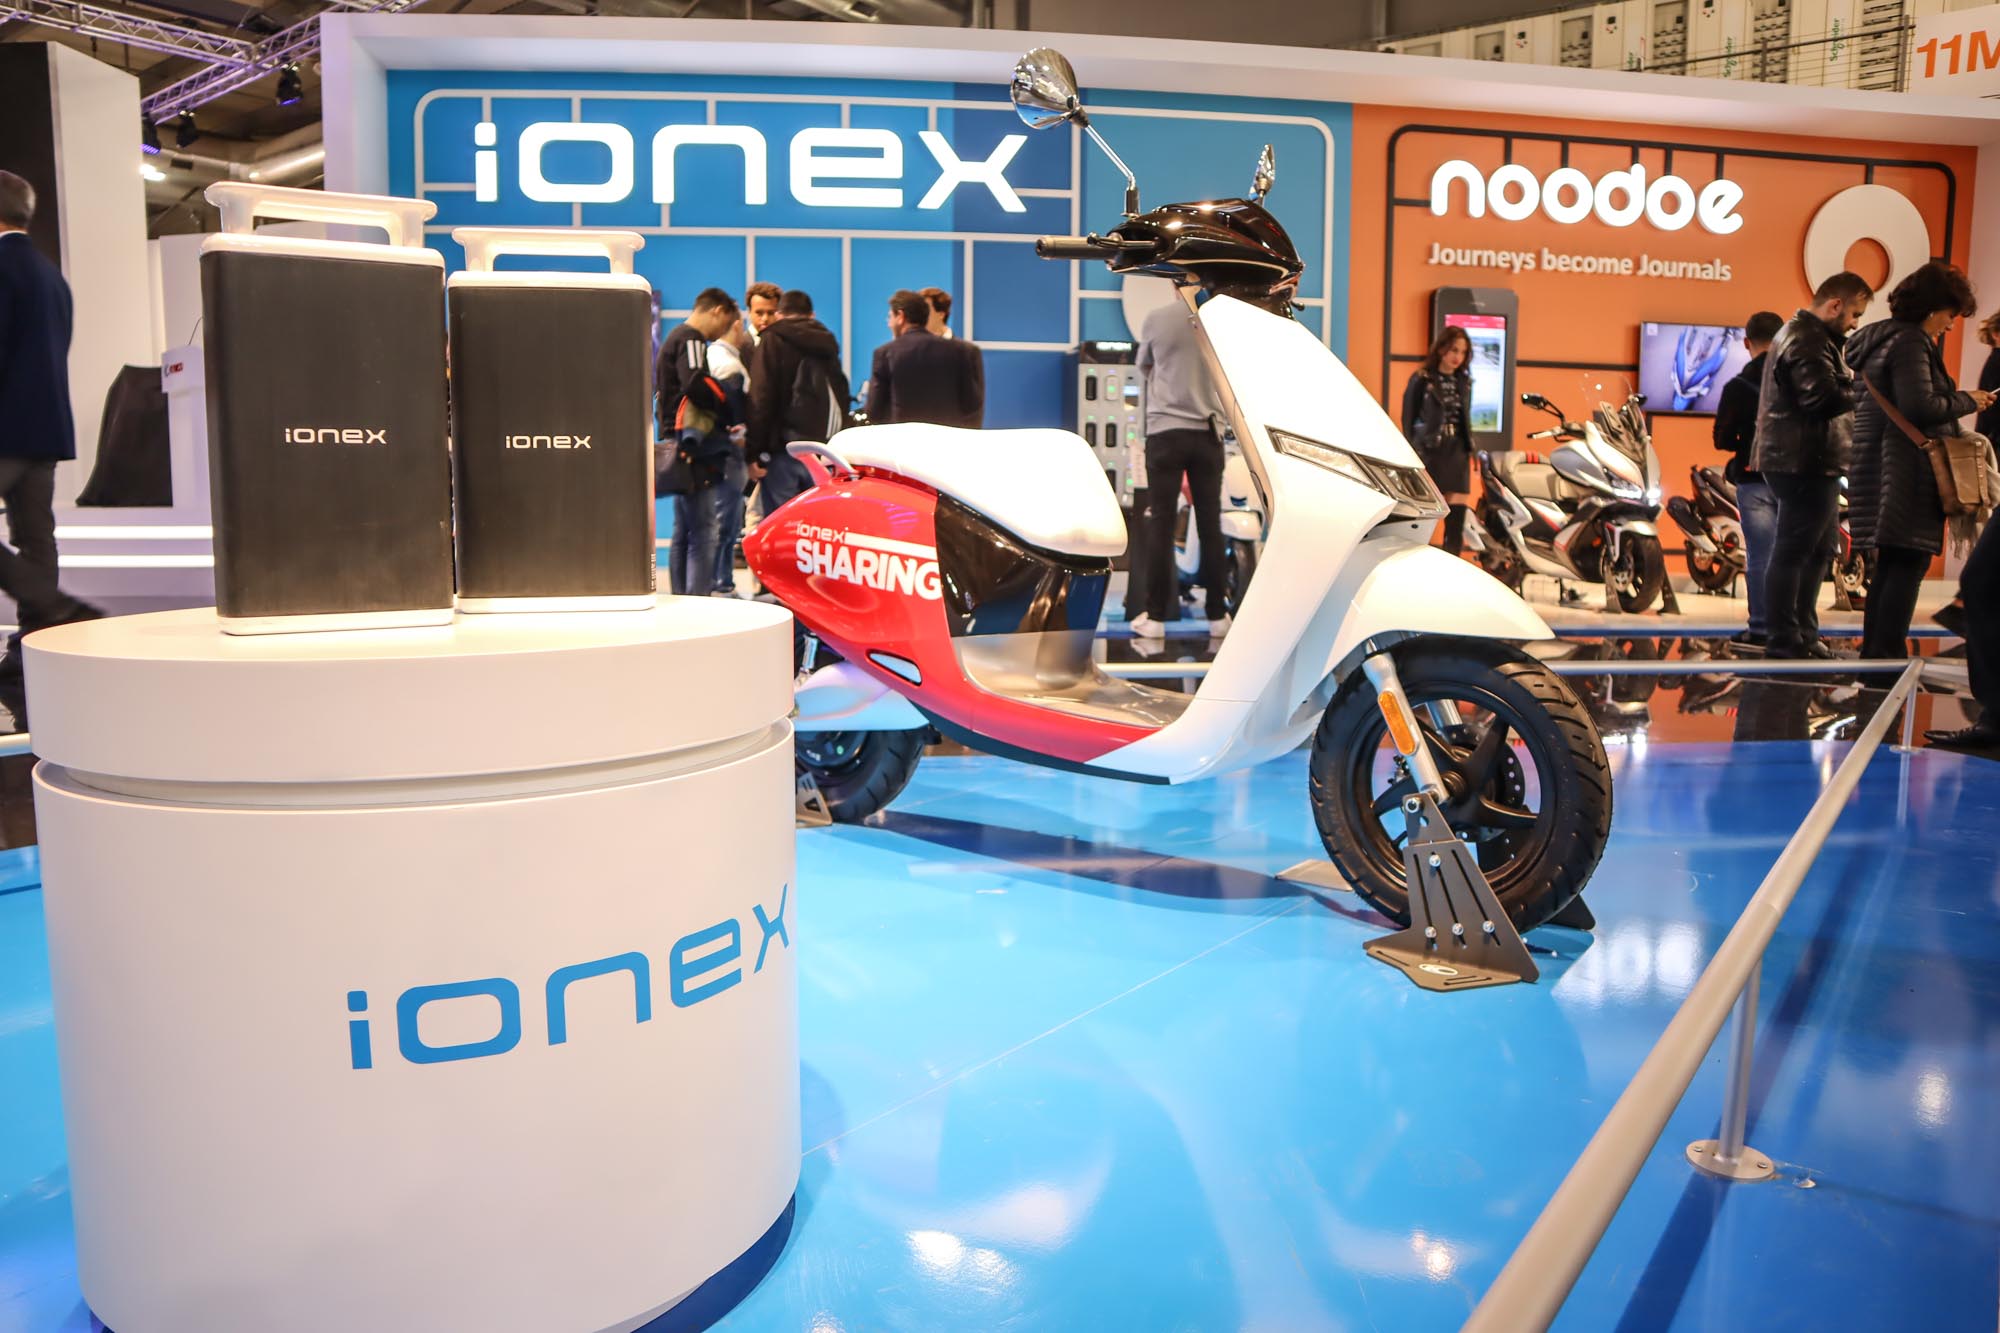 於 2019 米蘭車展上，Kymco 針對 iONEX 的展出能量也精心安排，期望讓全球看見自己於電動領域的努力與現階段成果。